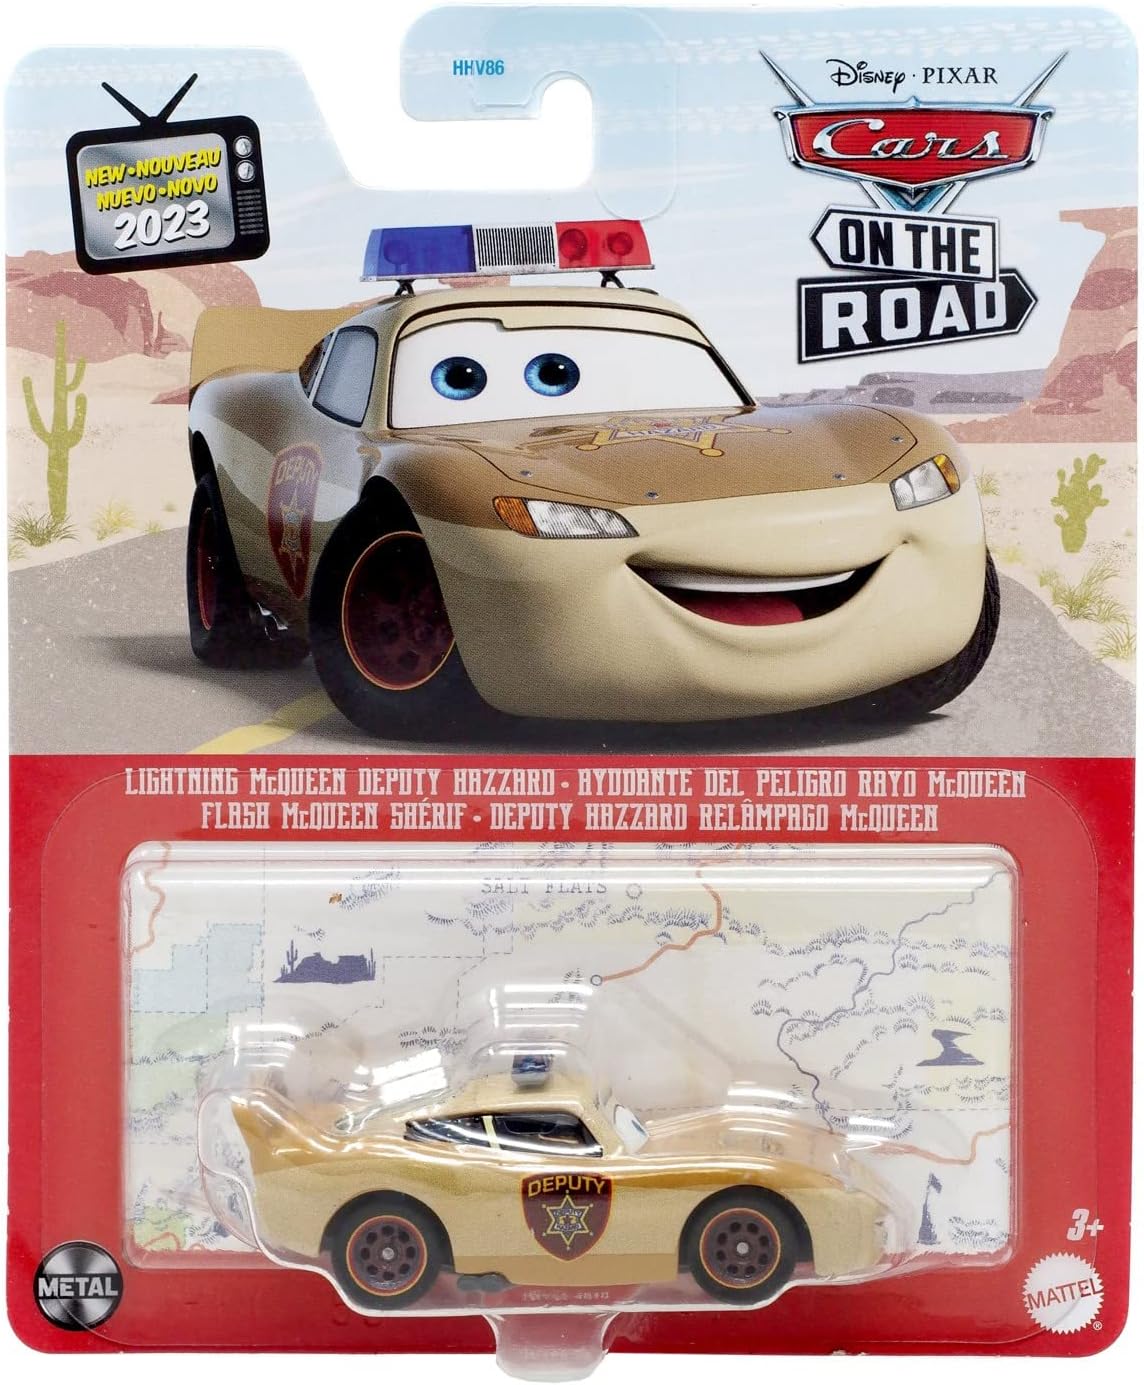 2023 美泰 Pixar Cars 汽车总动员 玩具合金车辆模型系列 CE盒